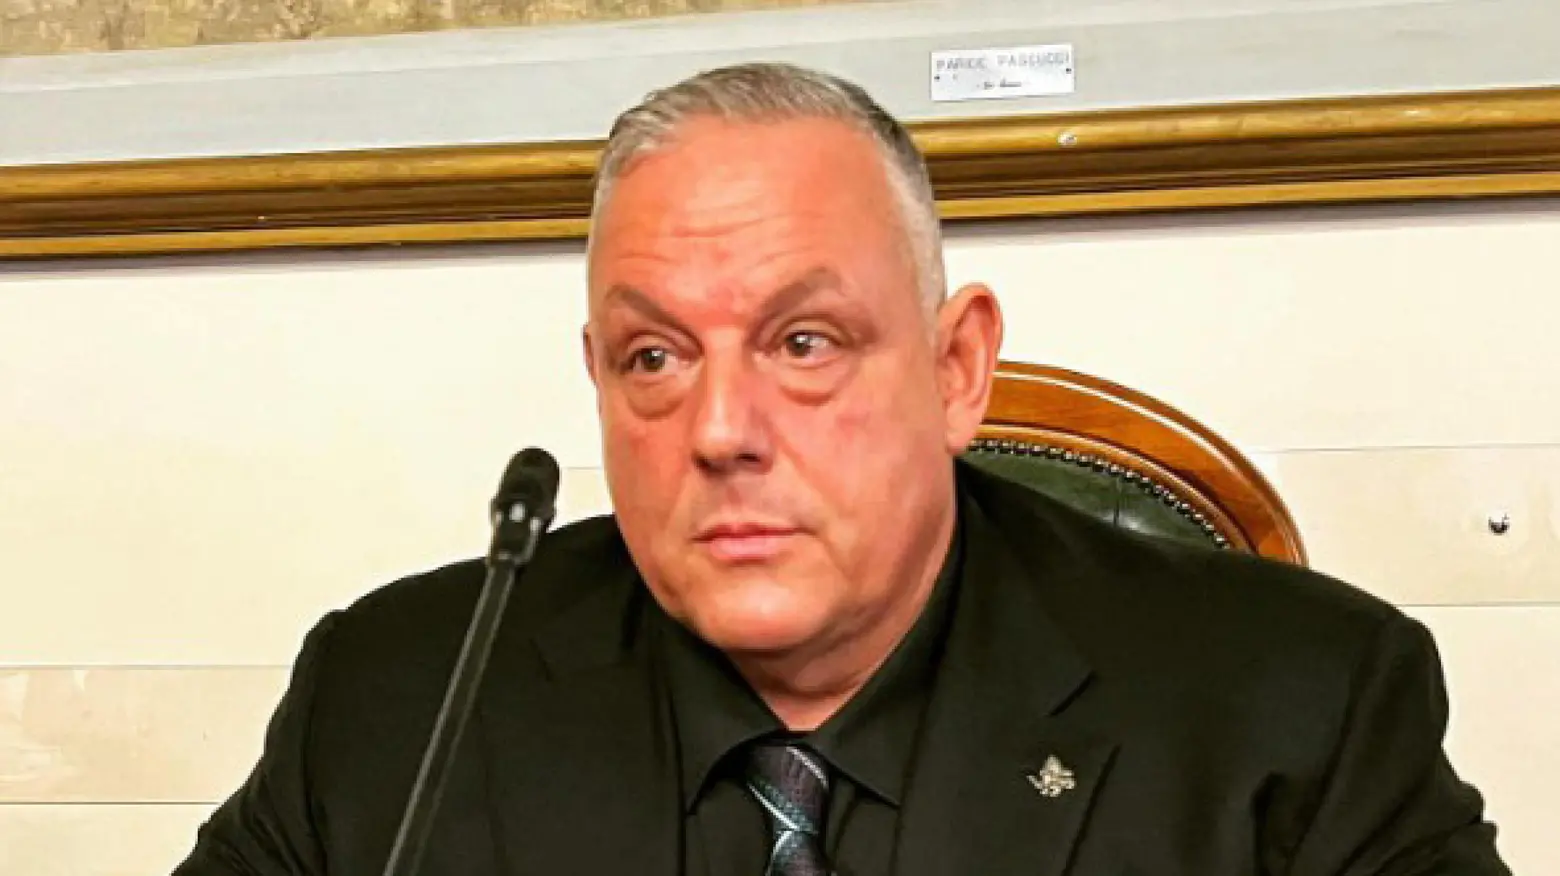 Post sessista sindaco di Grosseto contro Schlein, polemica